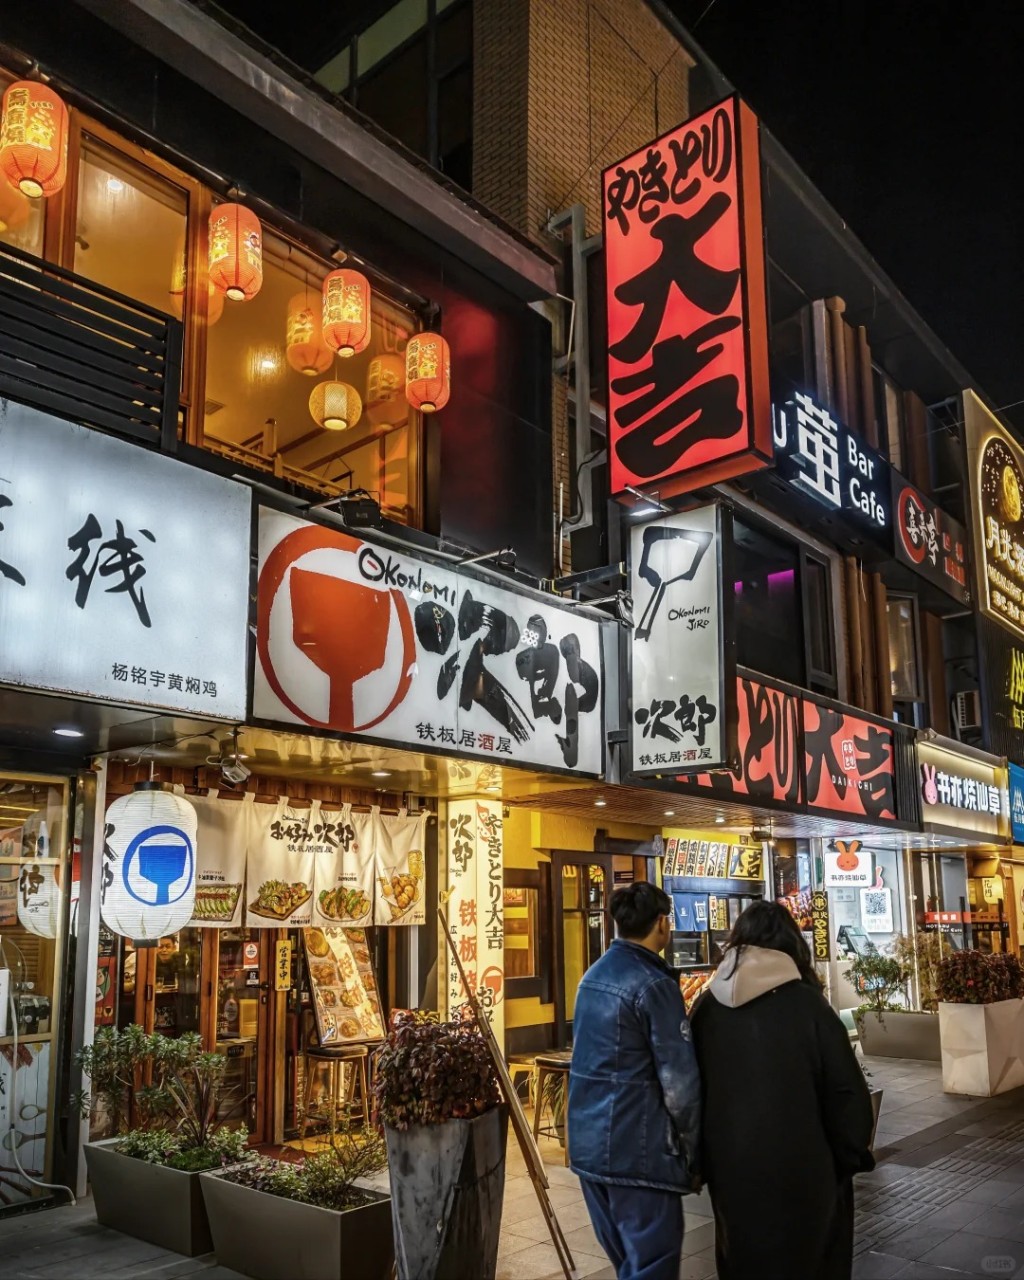 苏州淮海街是当地知名的日本文化街。小红书